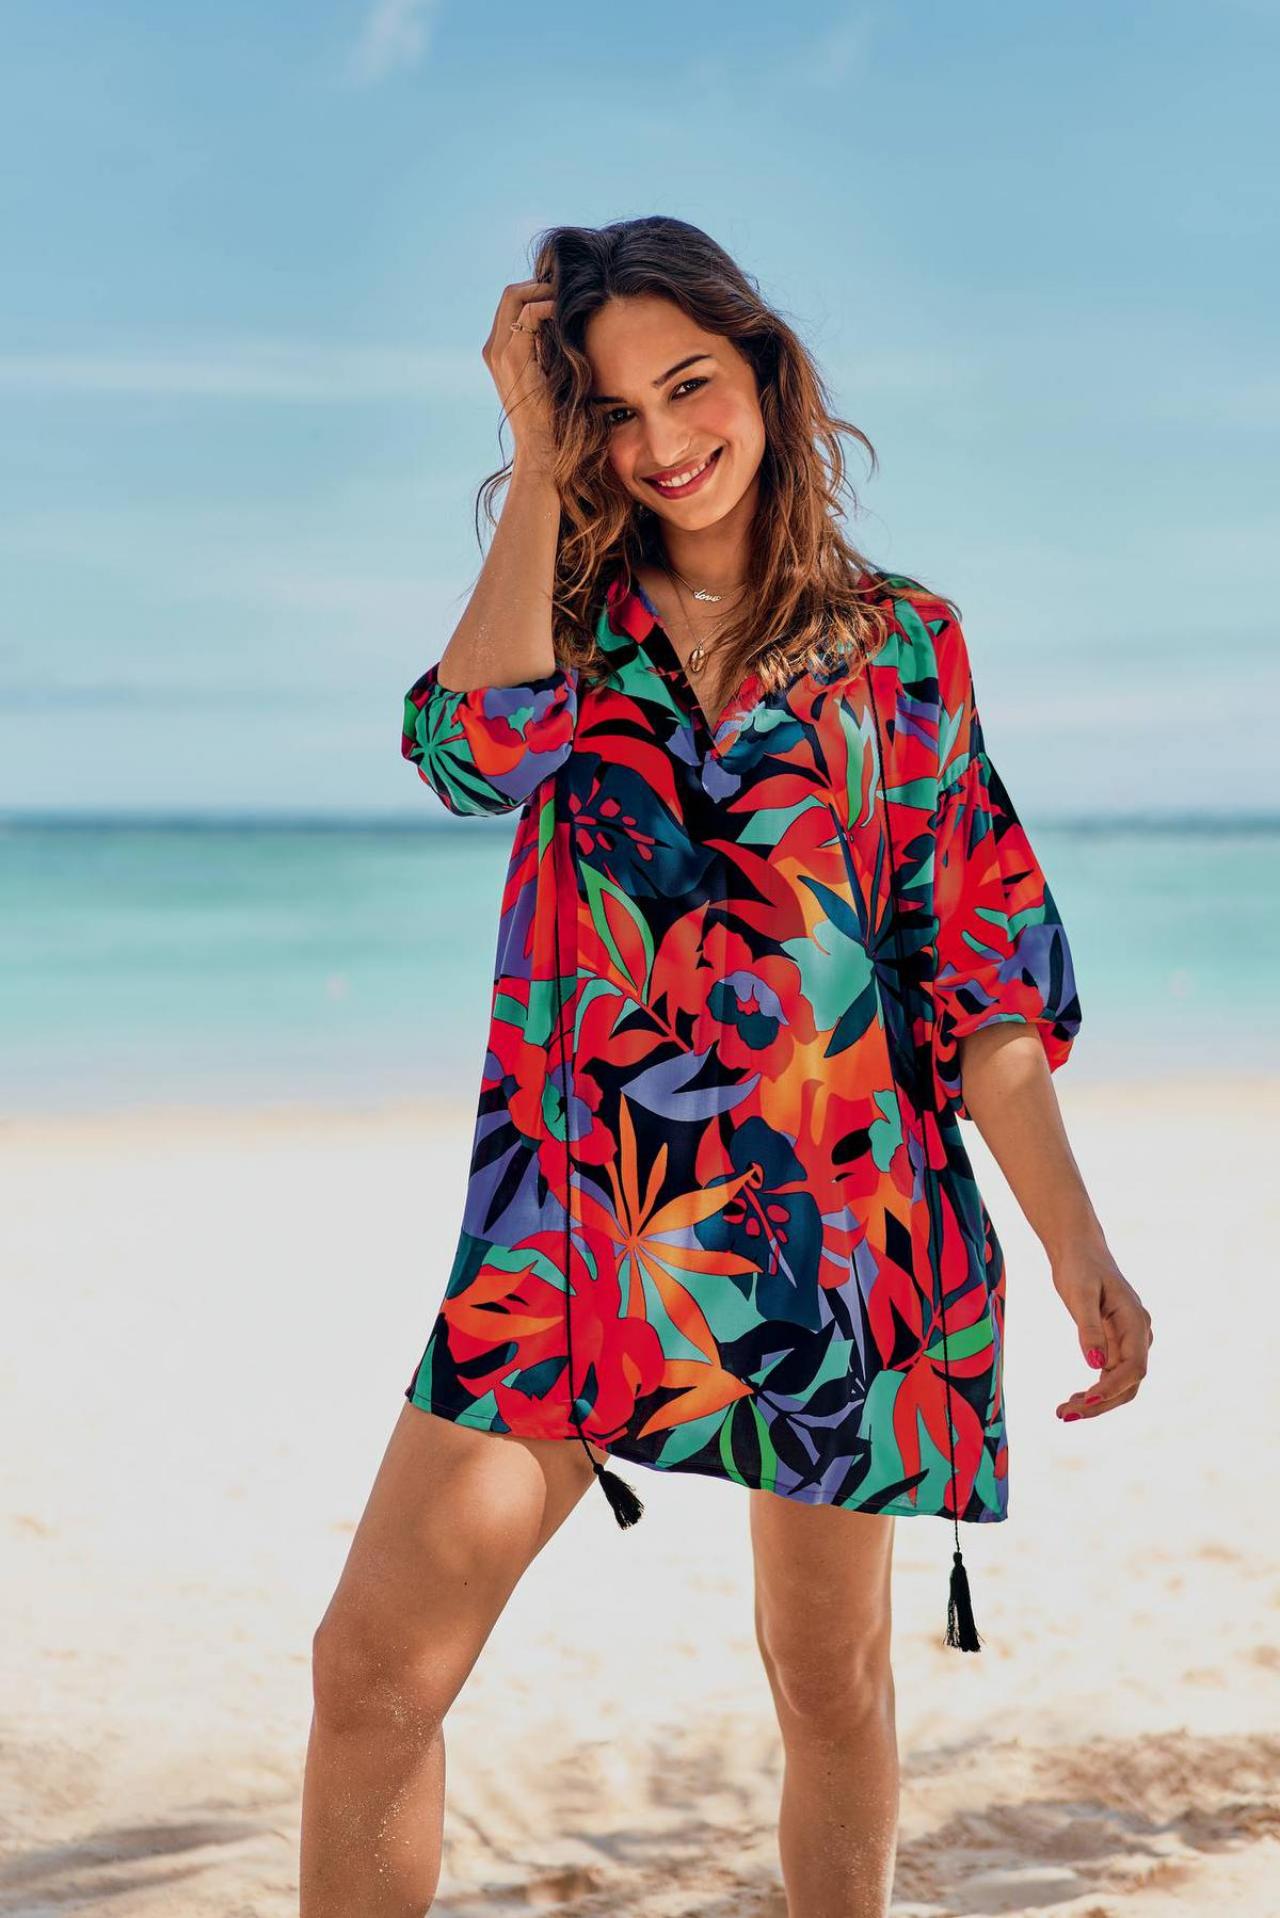 Ideaal voor de weg van en naar het strand: kleurig strandhemd/mini-jurk met exotisch bladmotief (79,95 euro), van Rosa Faia.© Rosa Faia